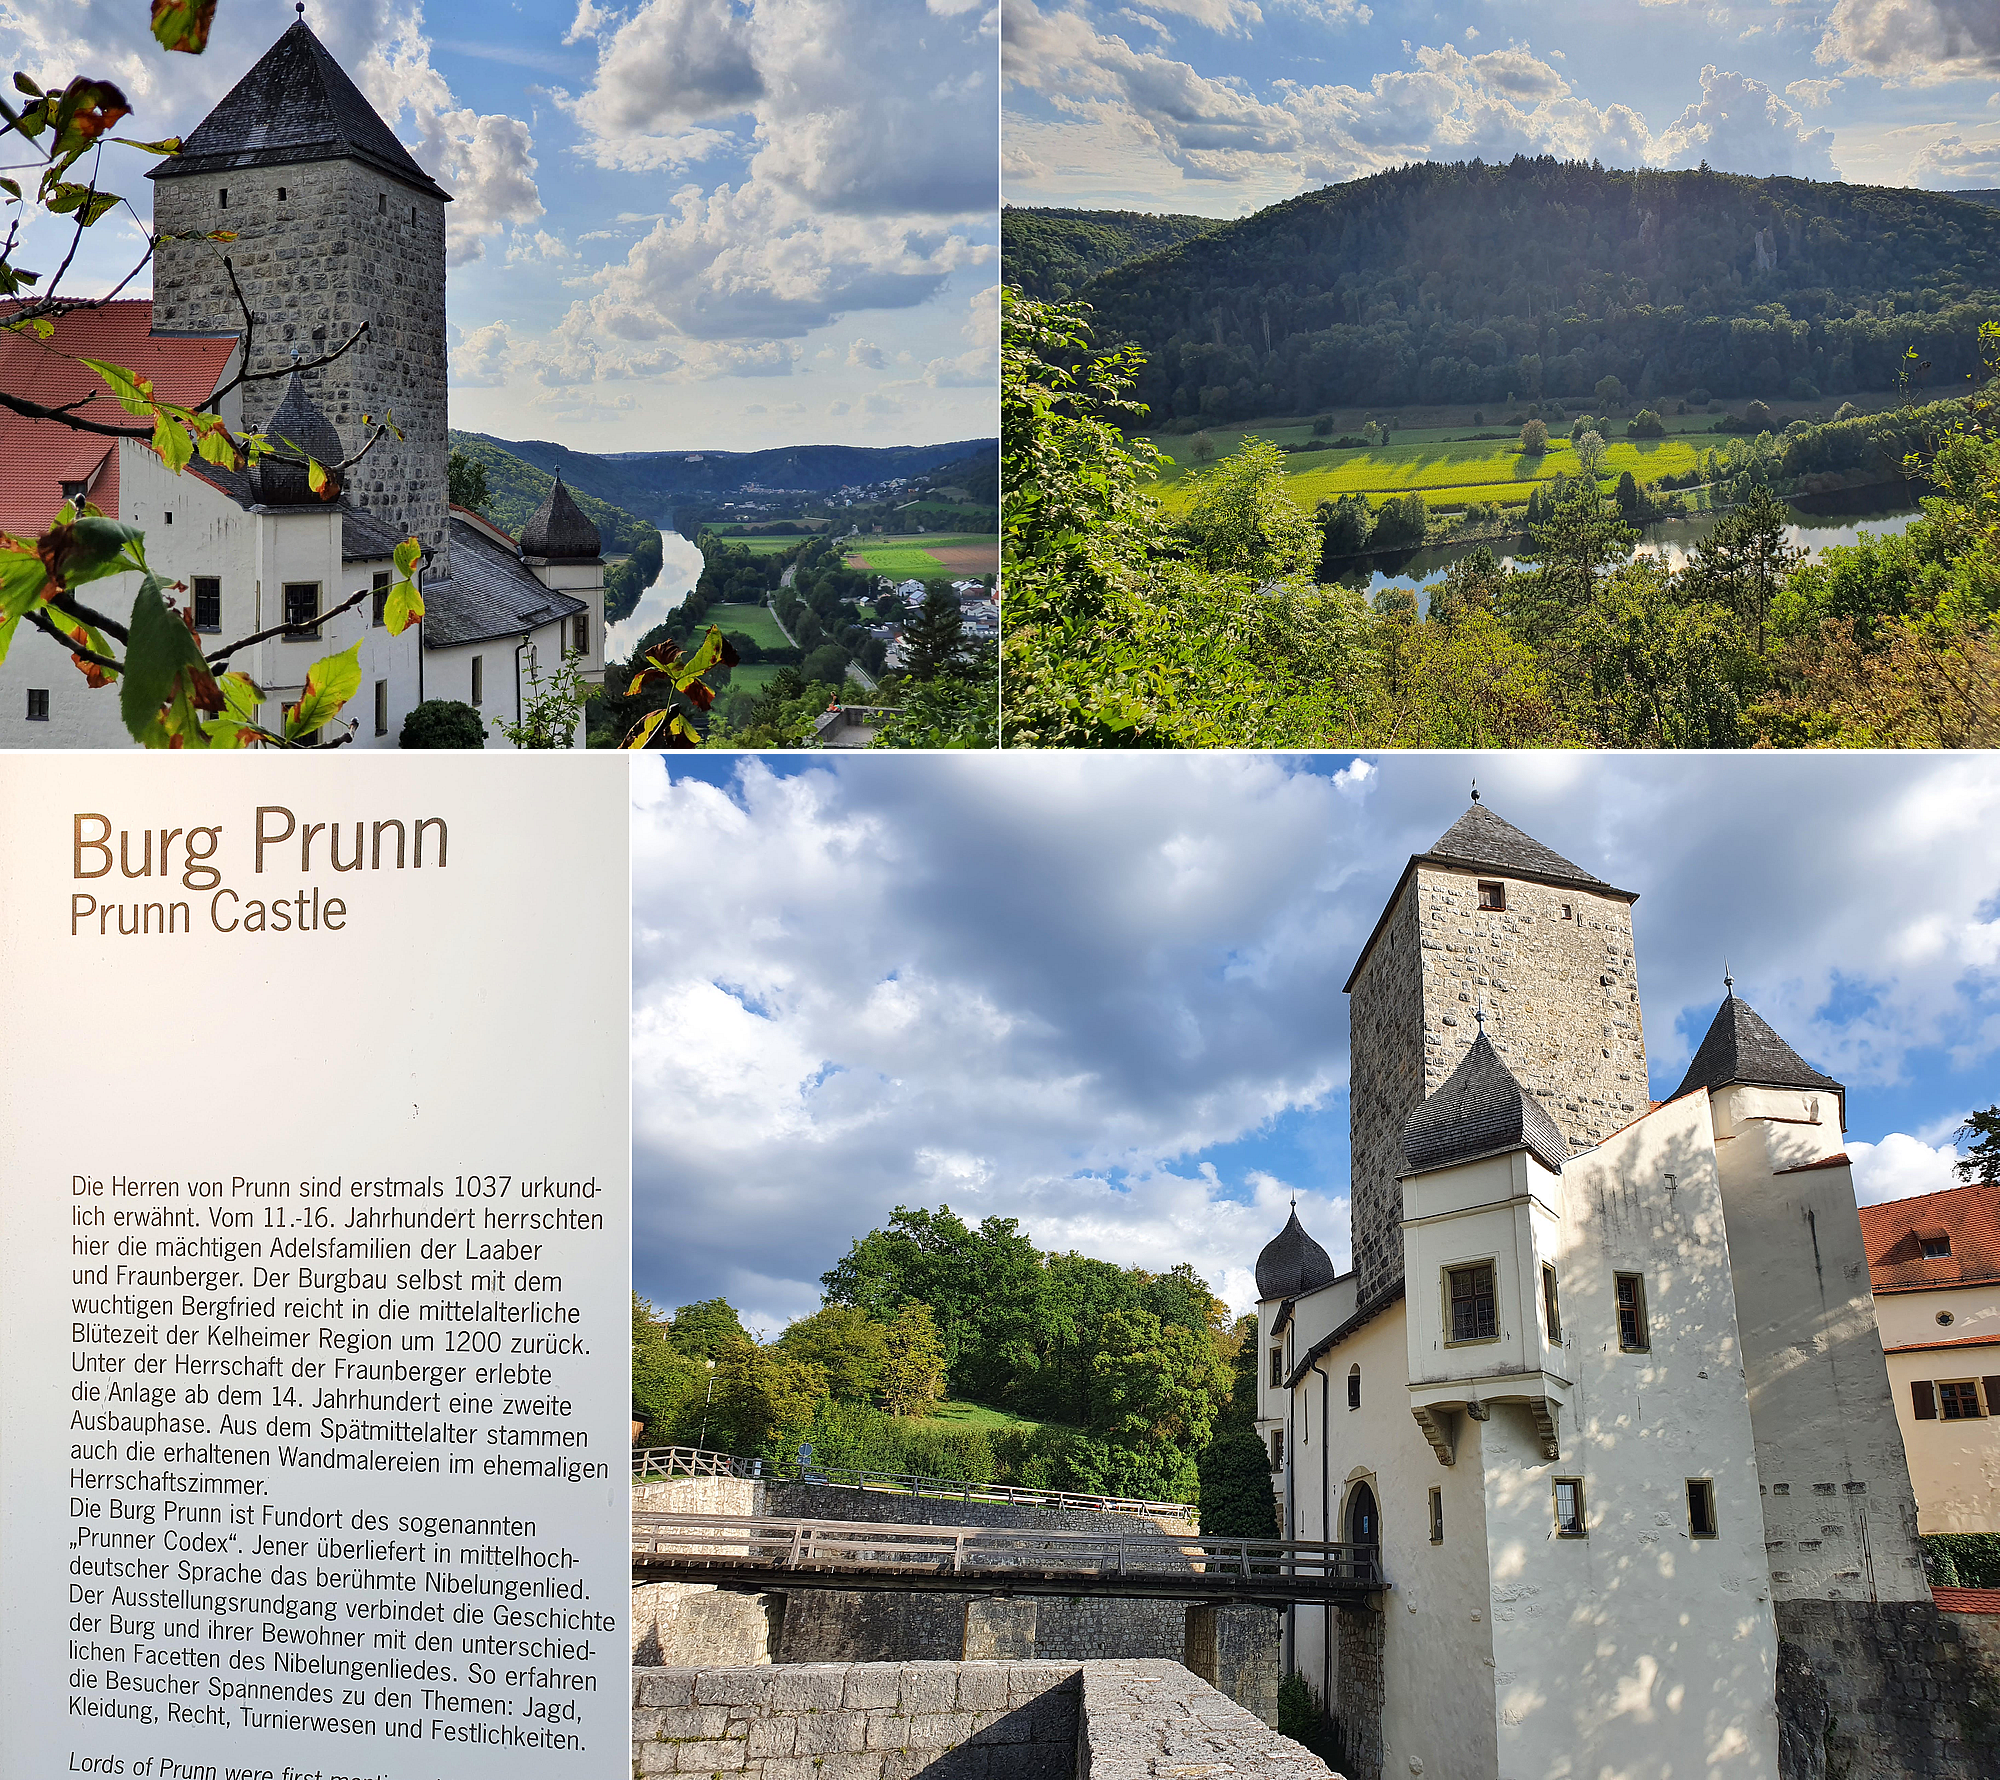  Besuch der Burg Prunn mit Blick auf die Donau